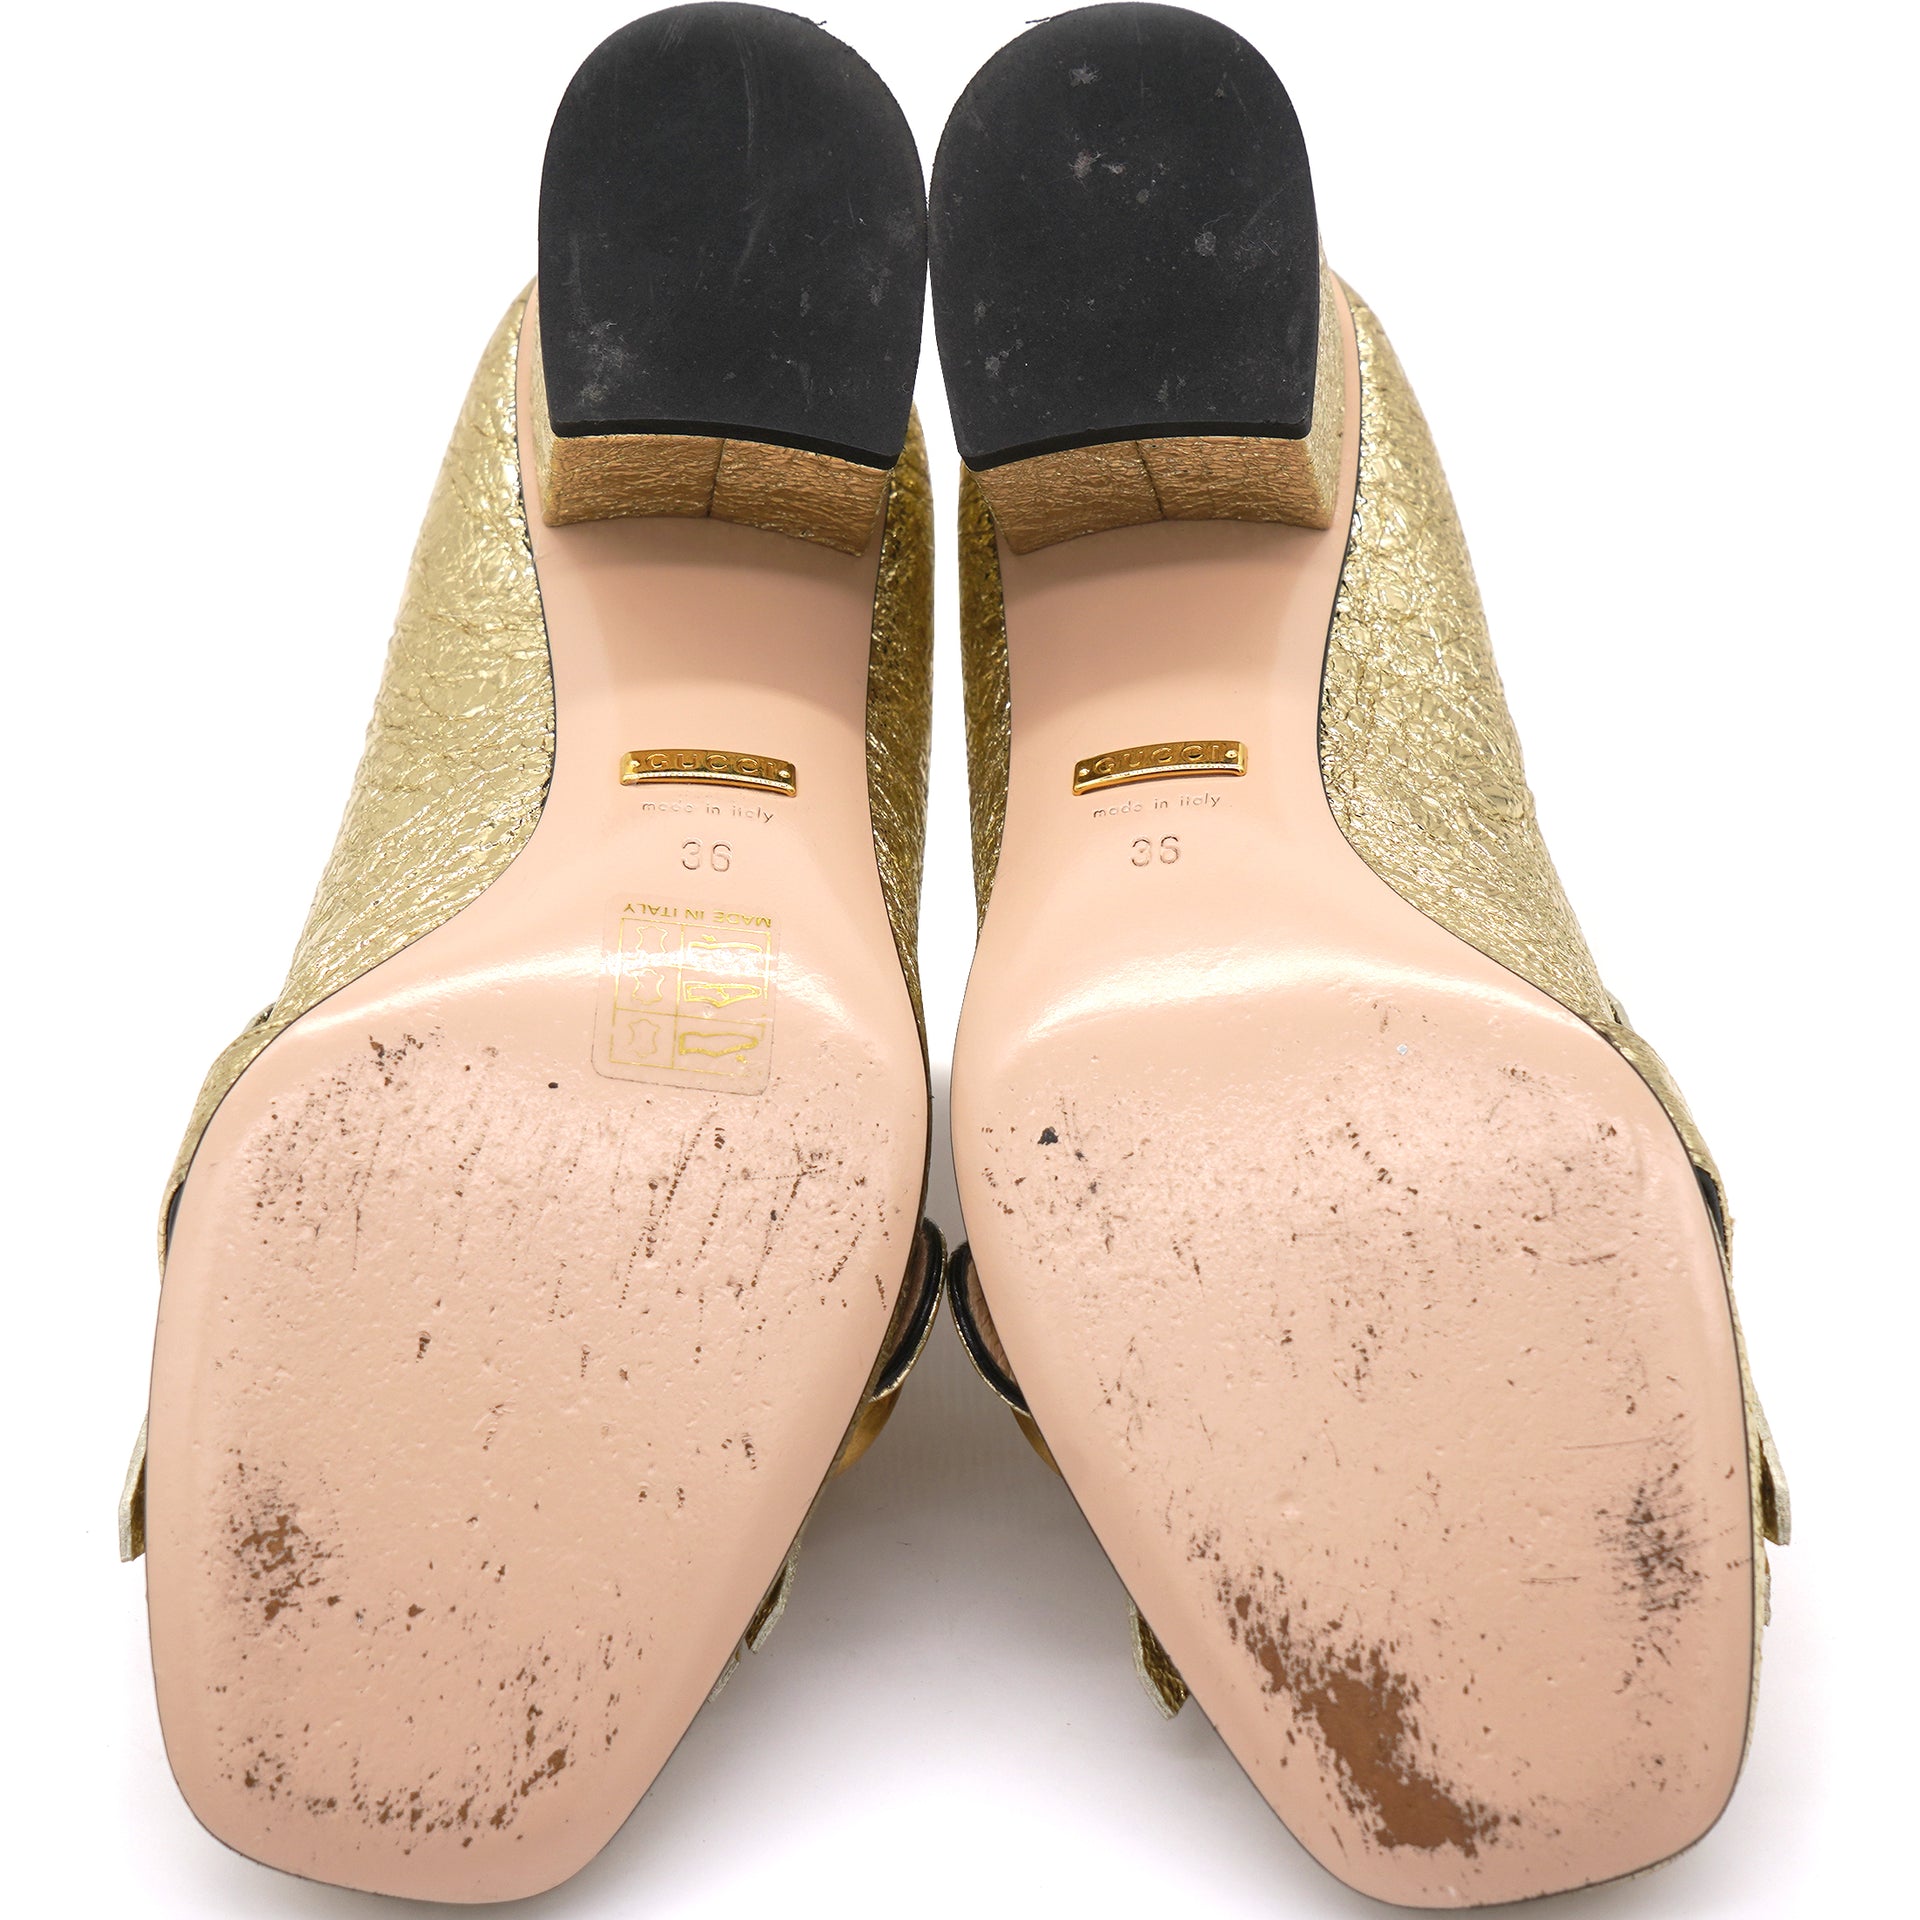 Gold Crackled Leather GG Marmont Fringe Block Heel Pumps 36